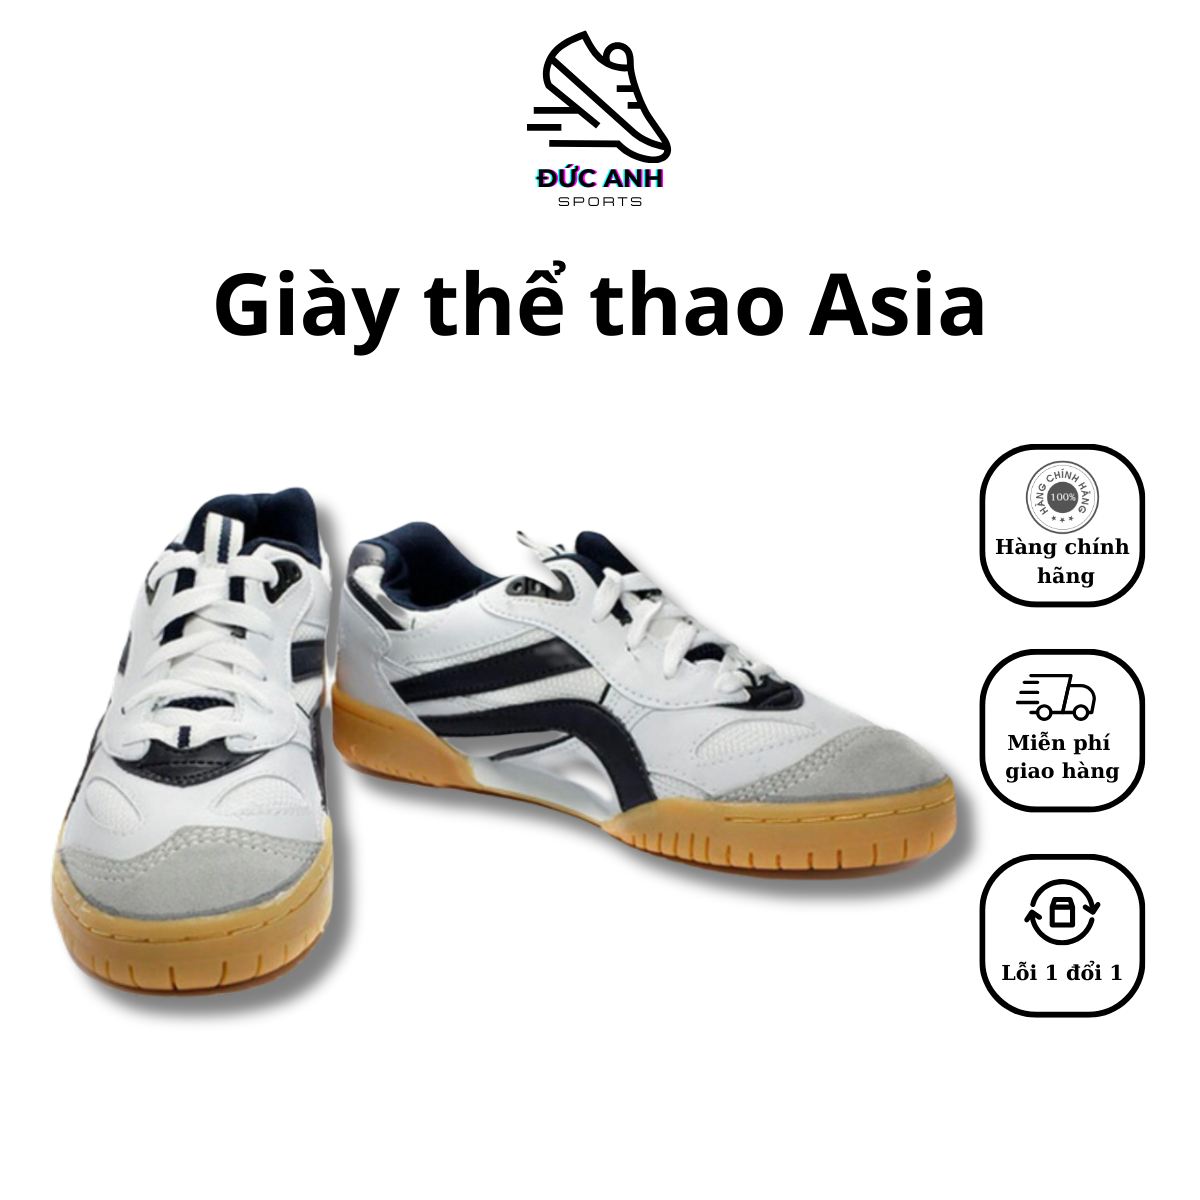 [Hàng có sẵn] Giày asia chính hãng.Giày thể thao asia chuyên sử dụng trong bóng chuyền, cầu lông,bóng bàn.Giày đế kếp